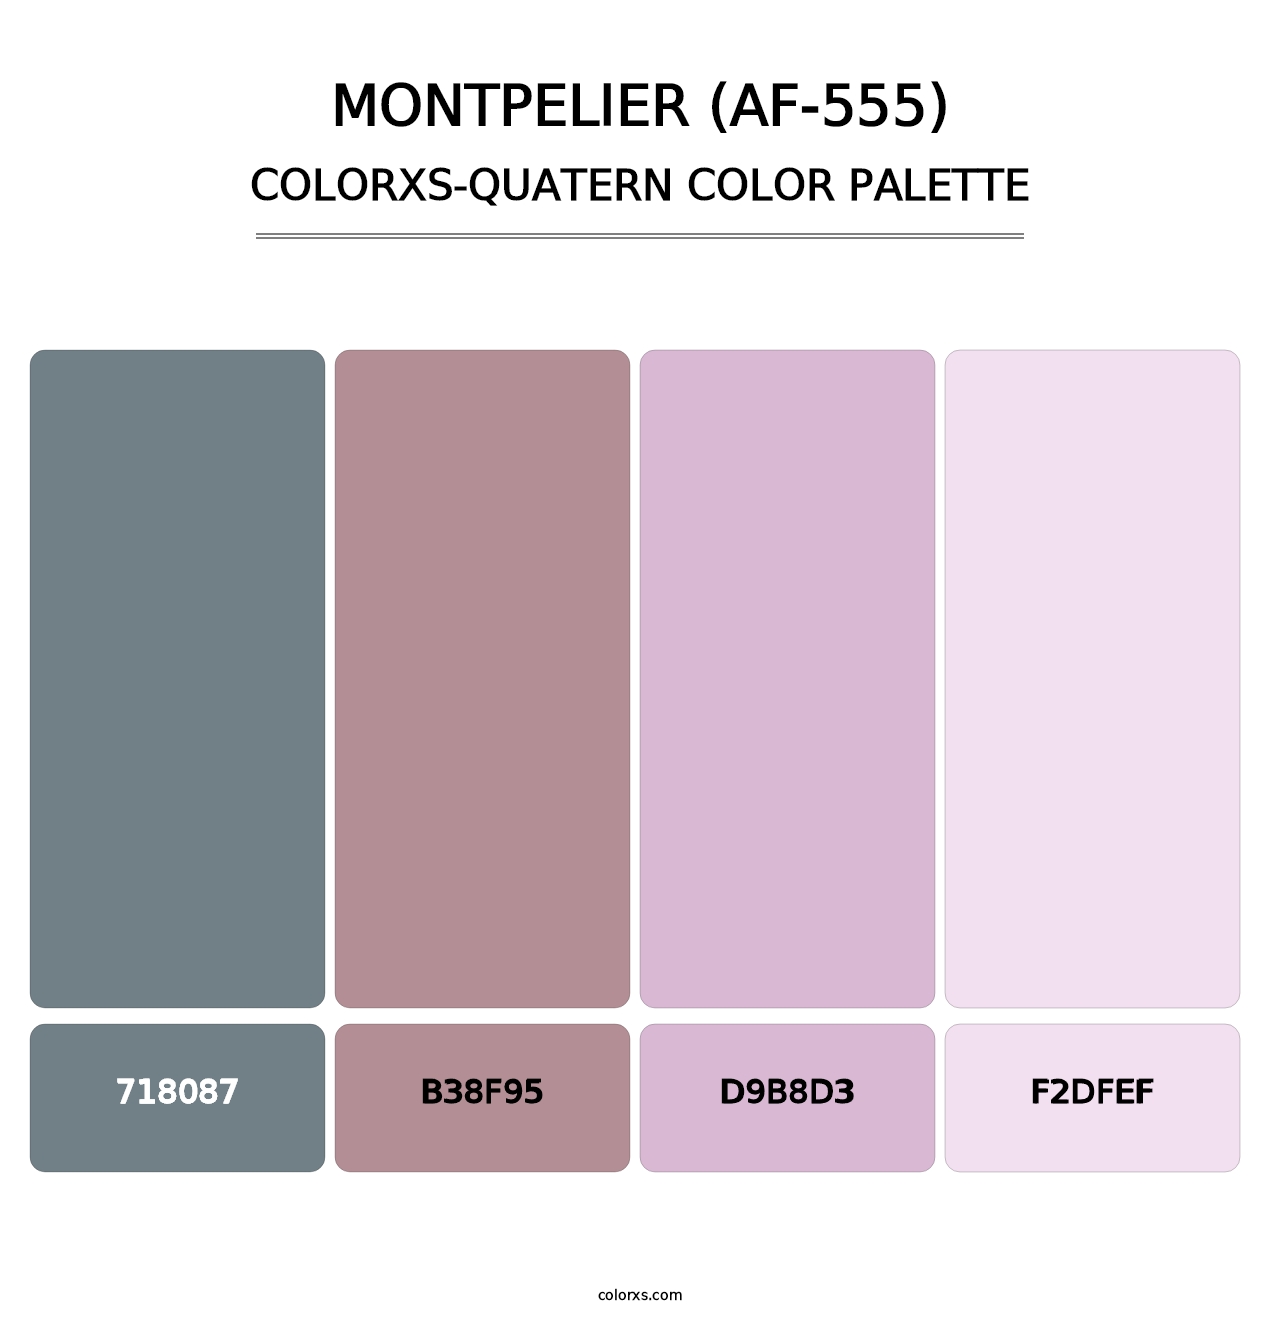 Montpelier (AF-555) - Colorxs Quatern Palette